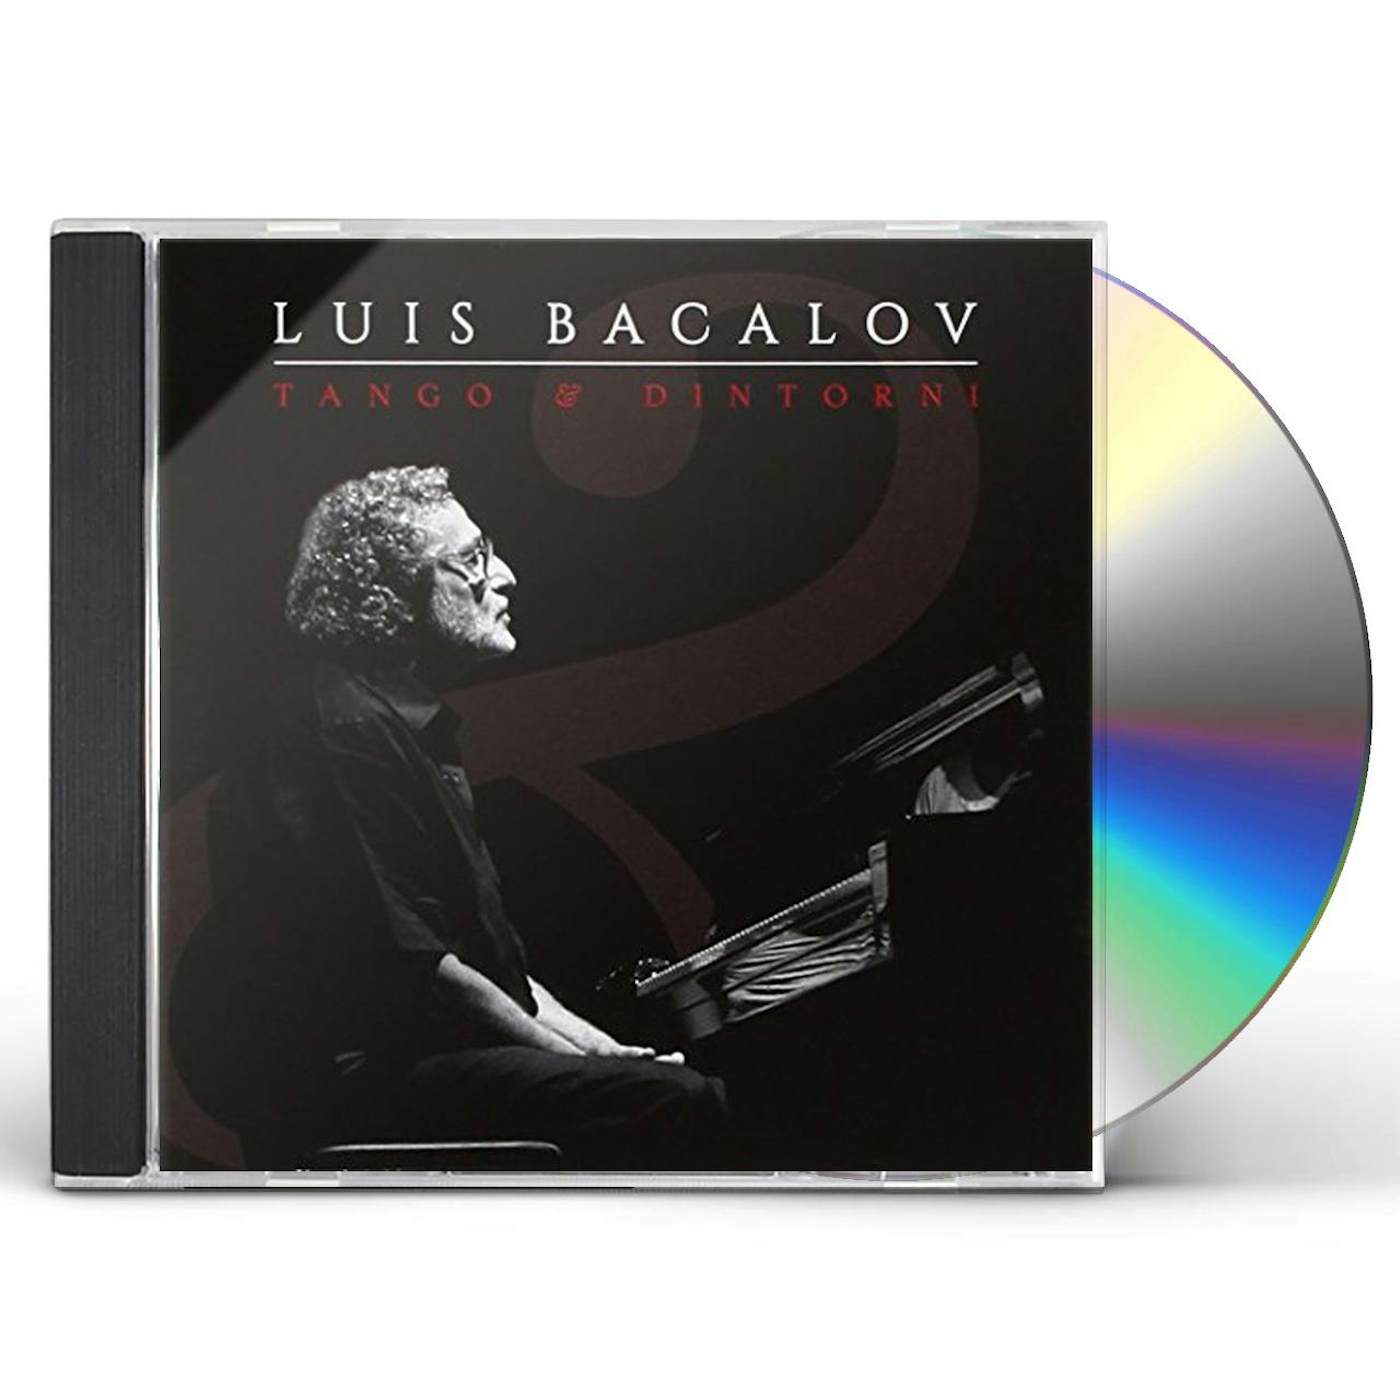 Luis Bacalov TANGO E DINTORNI CD